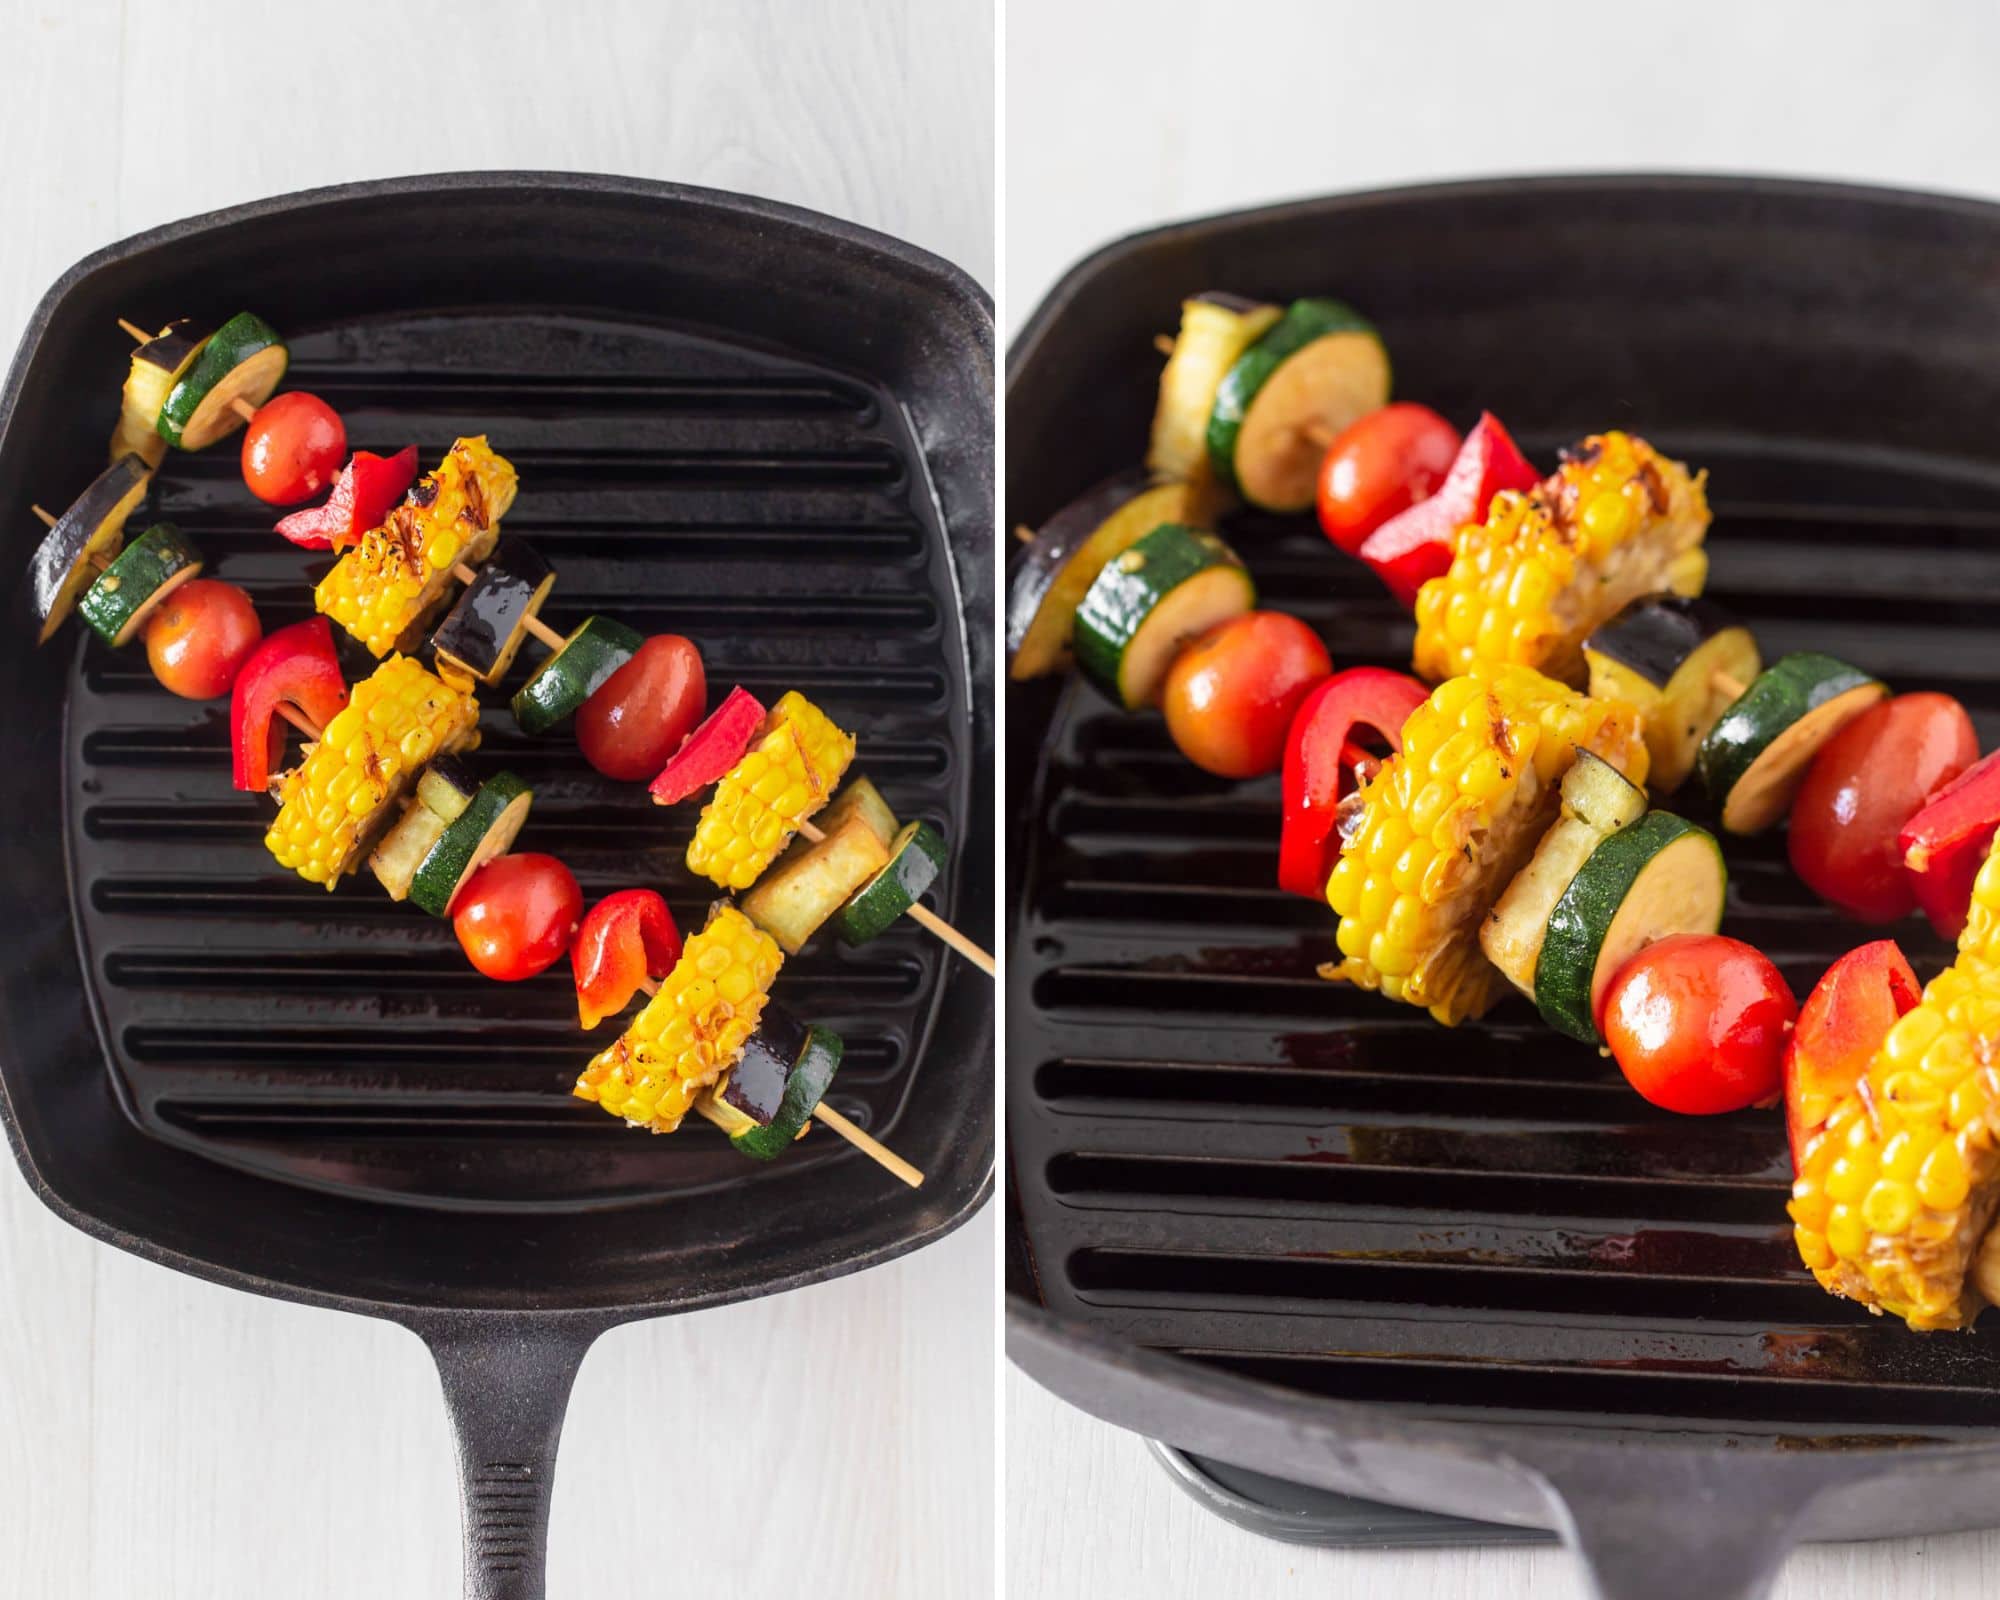 Vegetable skewers on grill pan.